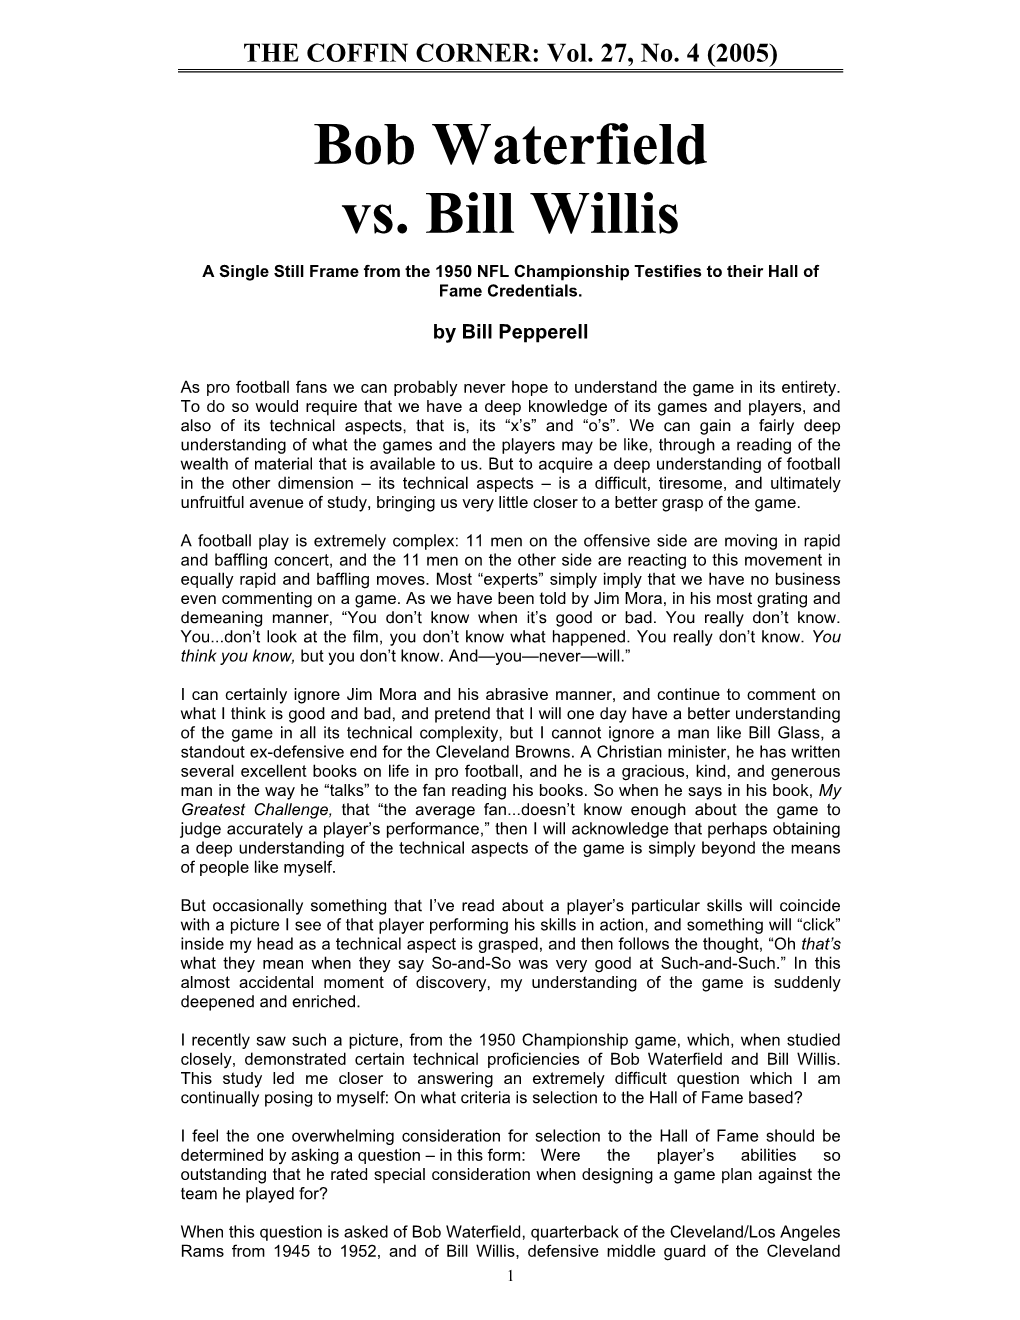 Bob Waterfield Vs. Bill Willis